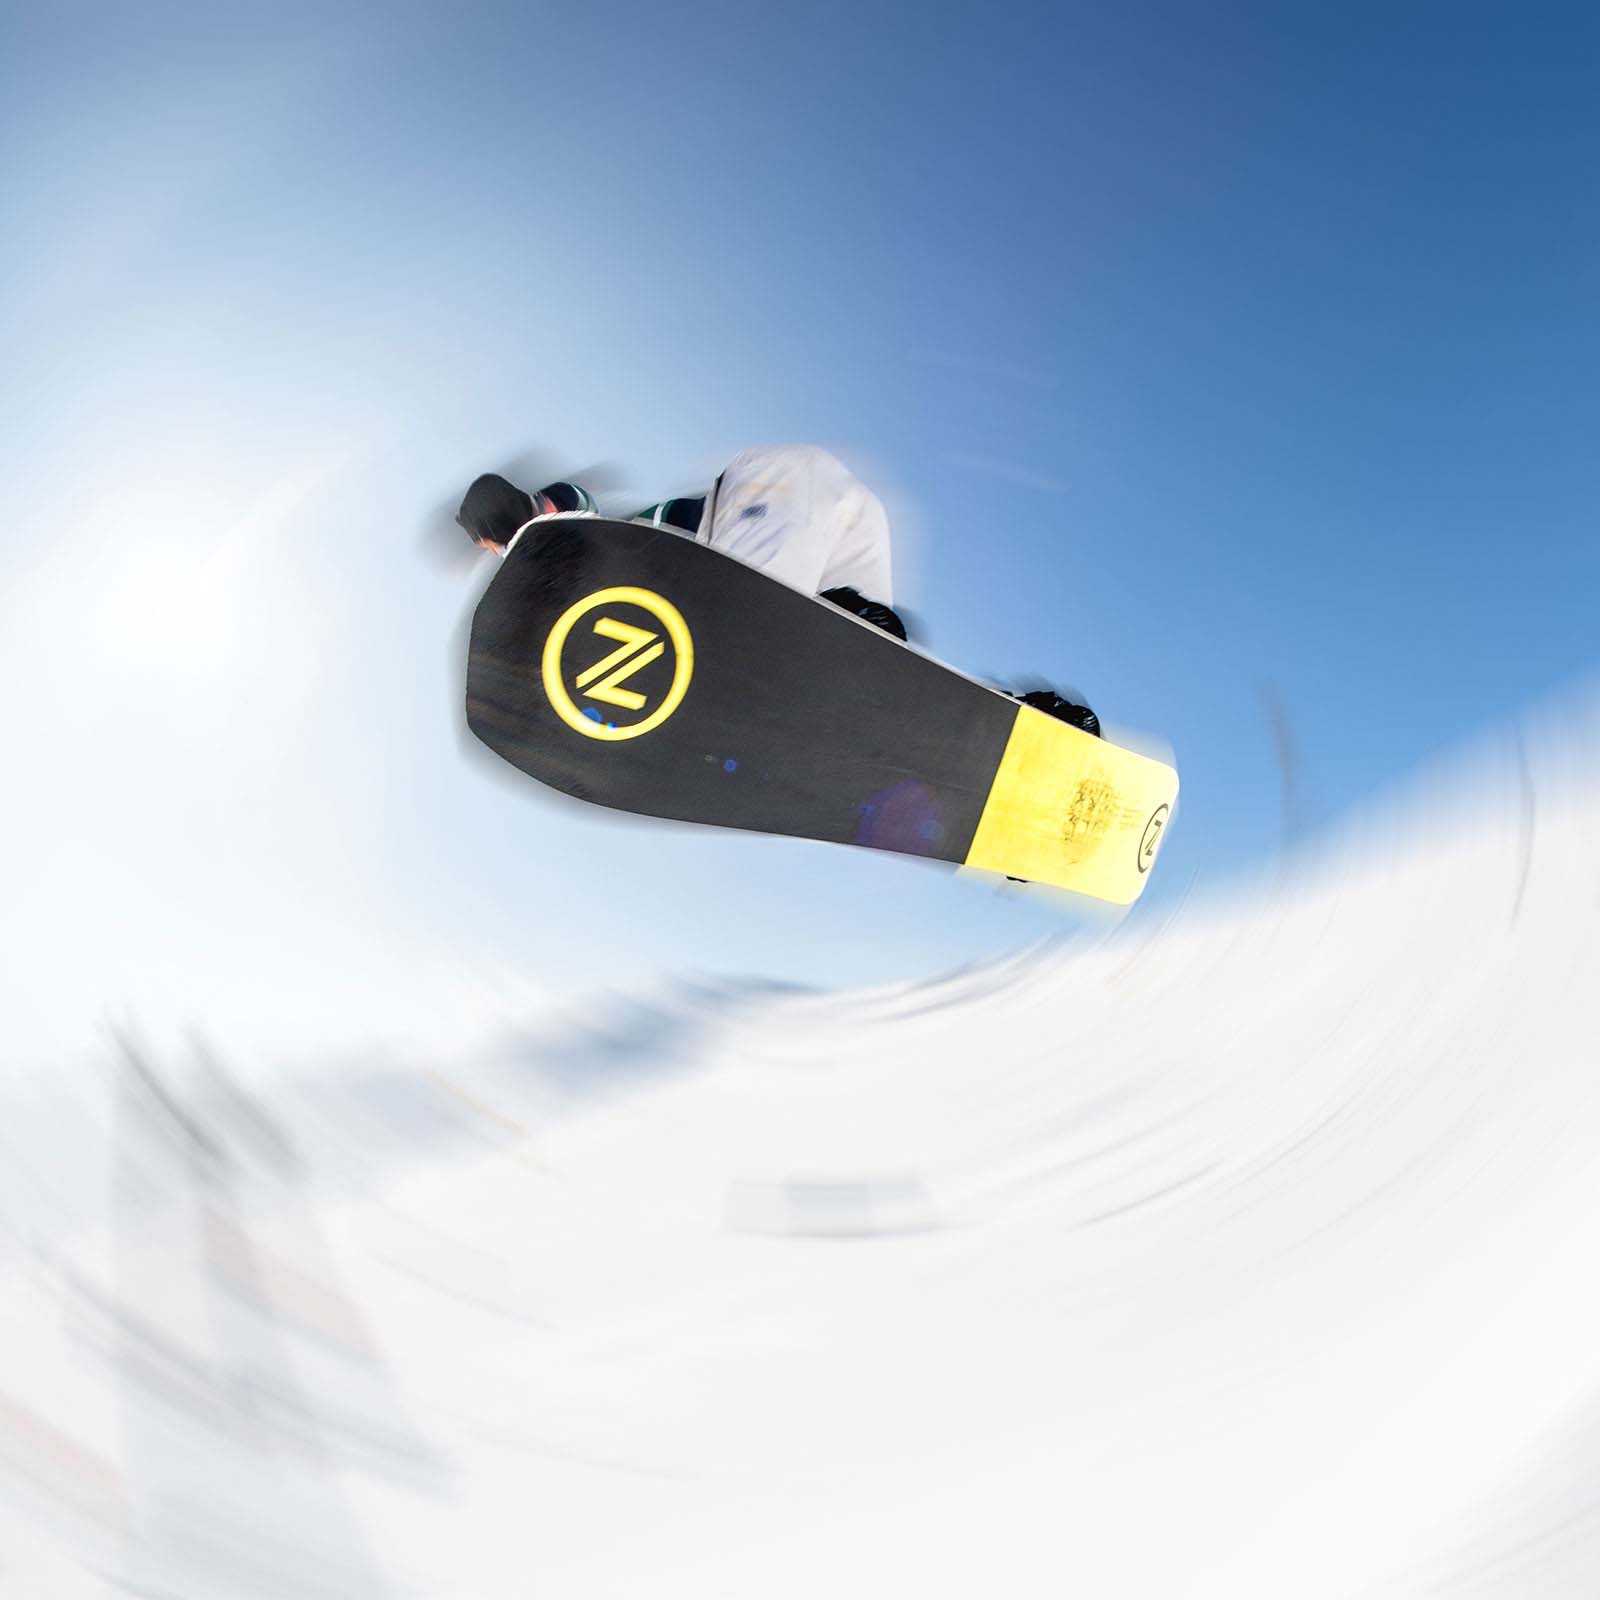 Nidecker Sensor All Mountain/Freestyle Snowboard